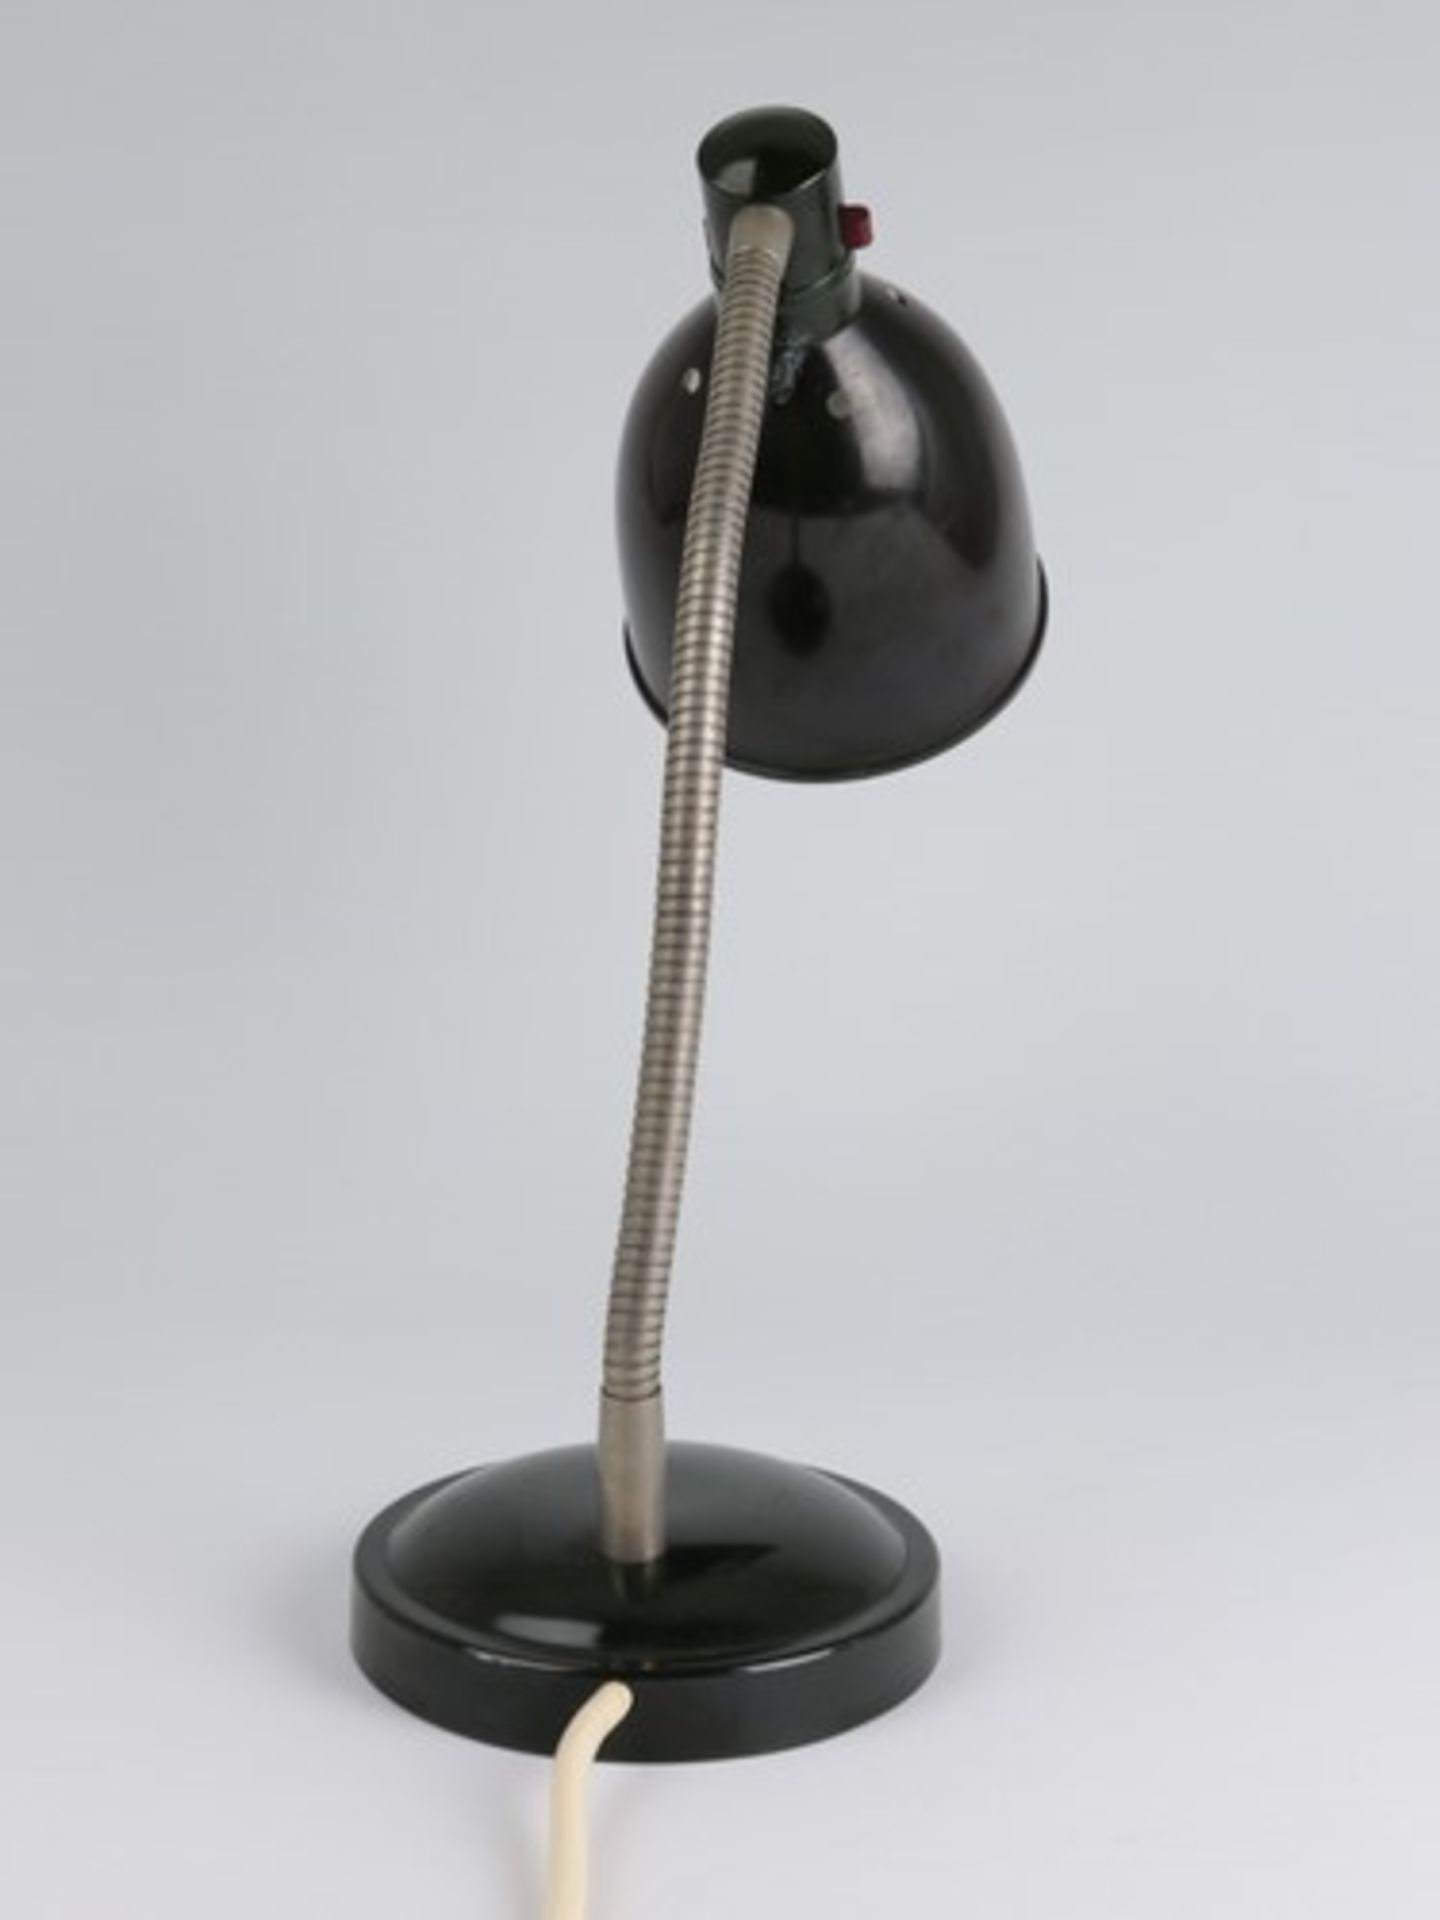 Tischlampeum 1920/30, Metall/Bakelit, dunkelgrün gefasst, einflammig, runder Stand, biegbarer - Image 3 of 5